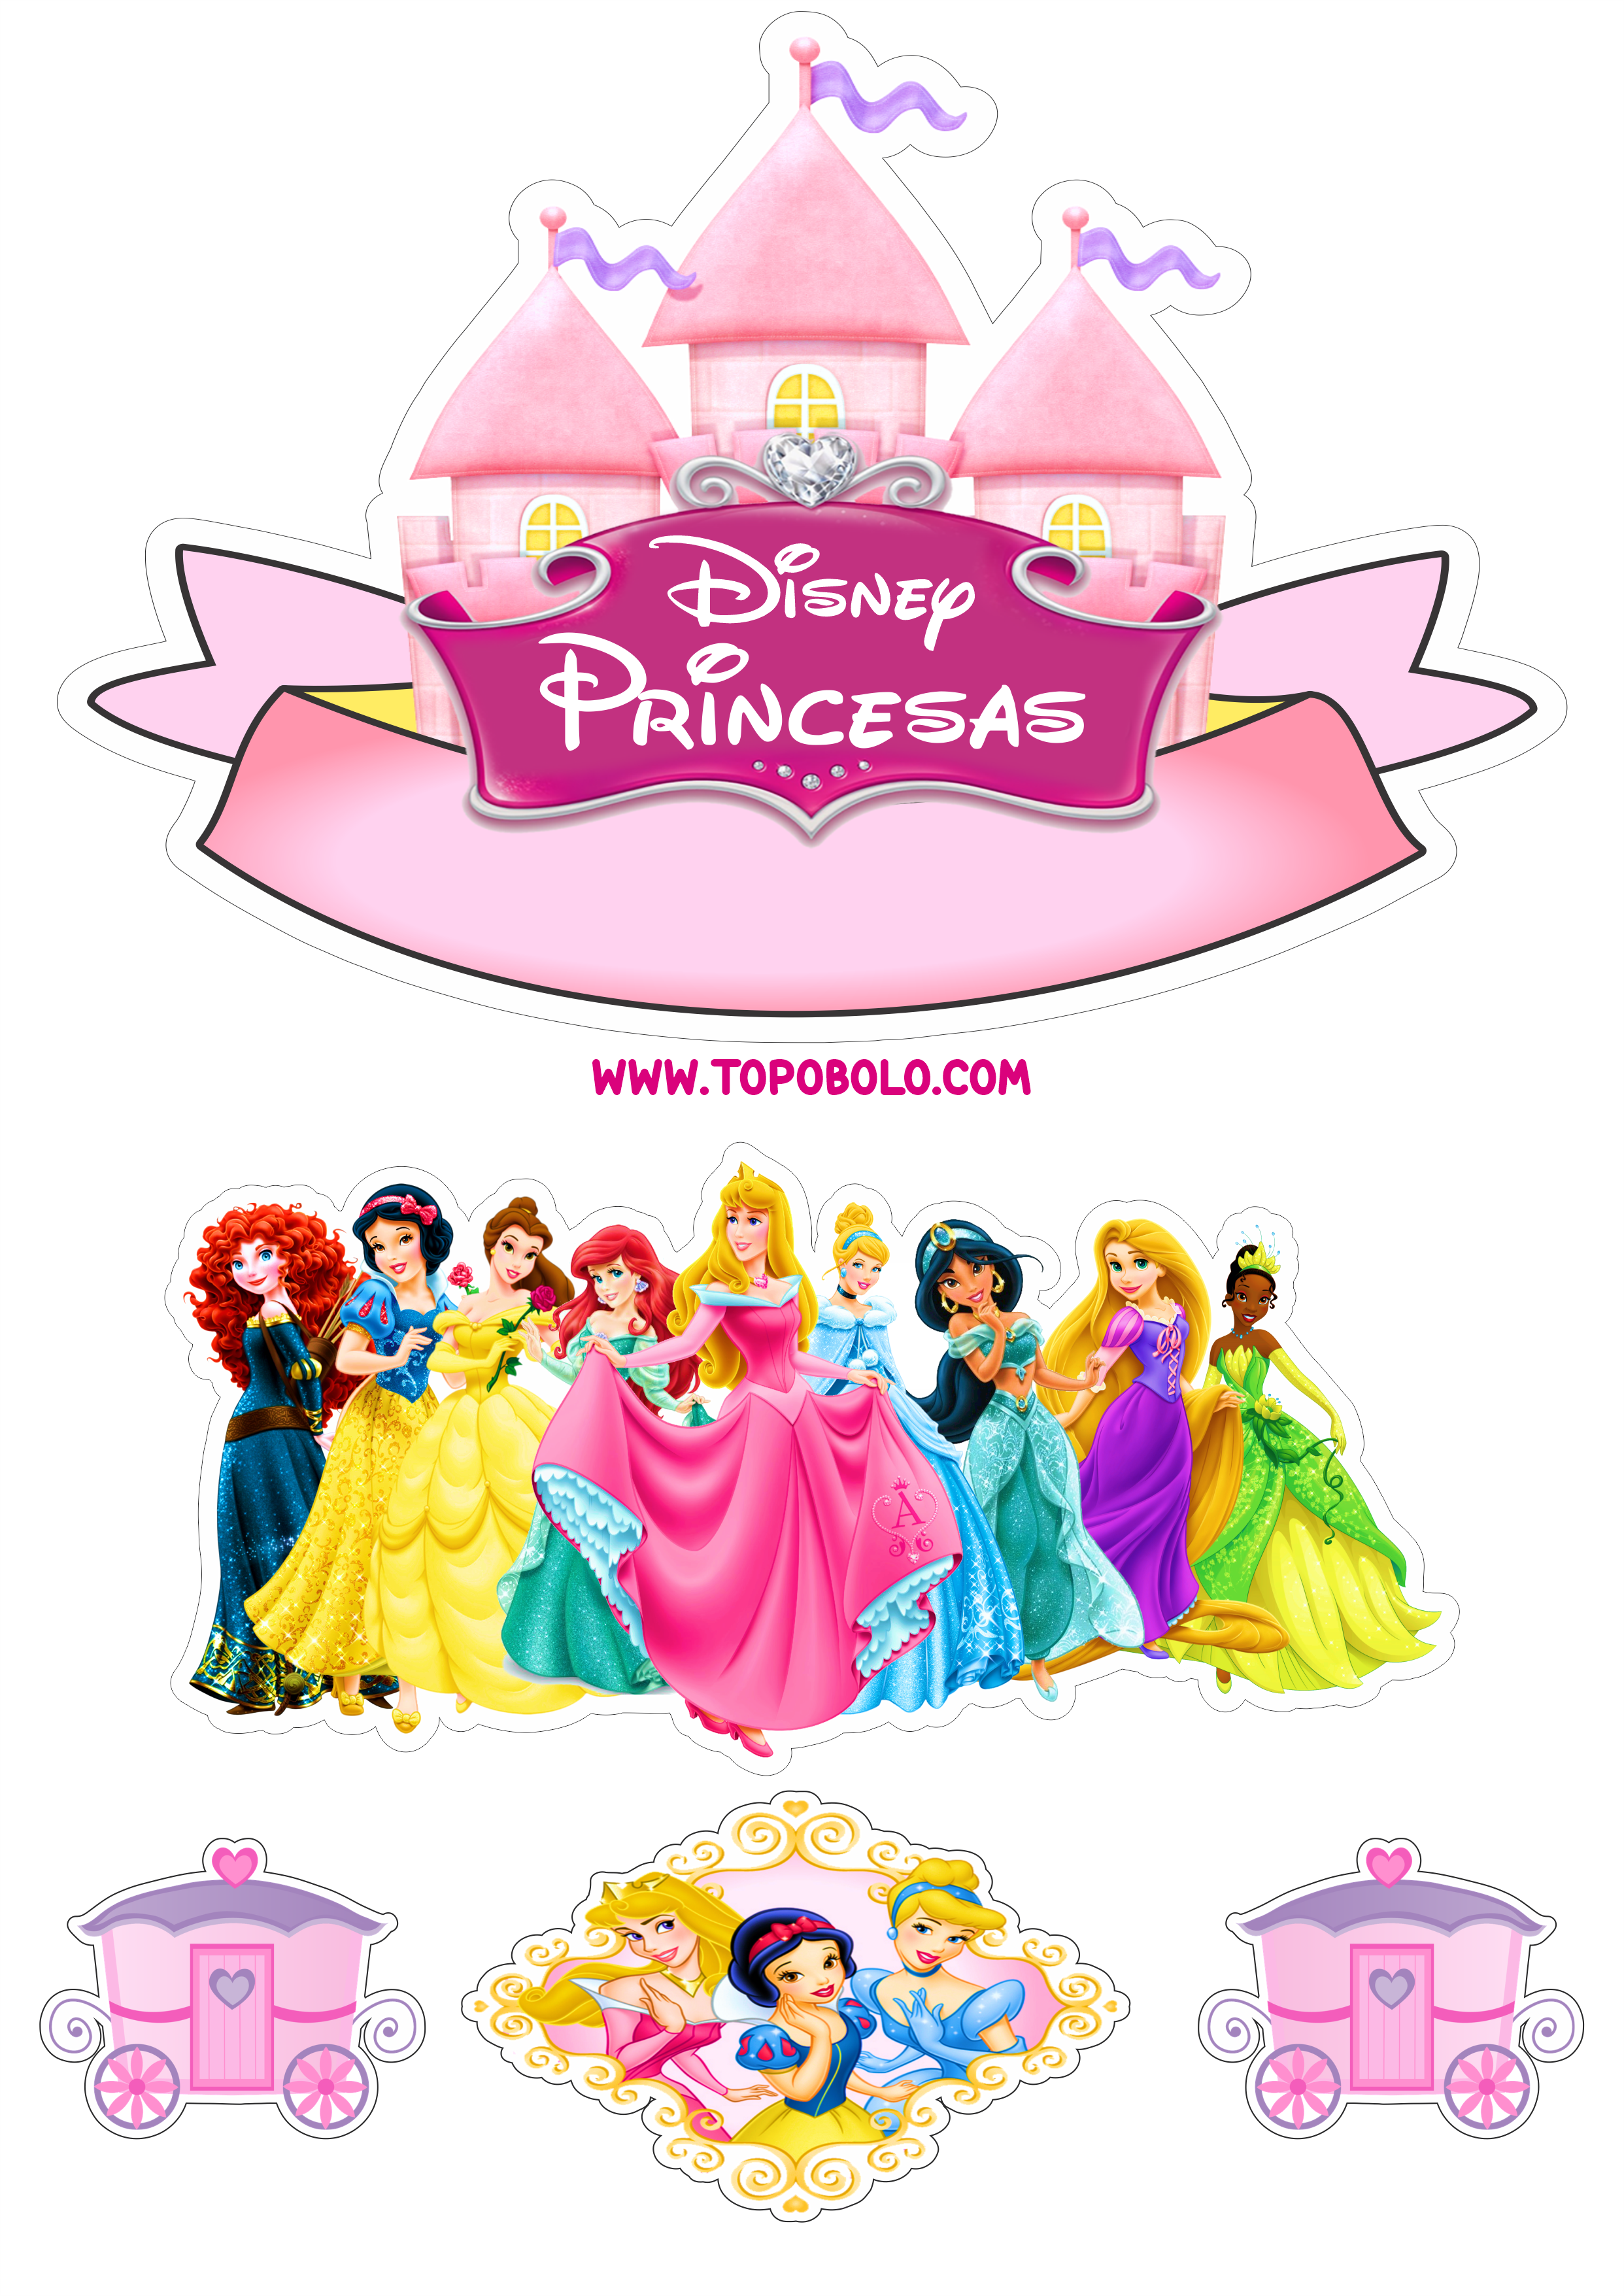 Princesas Disney topo de bolo pronto para imprimir aniversário infantil papelaria criativa festa pronta png